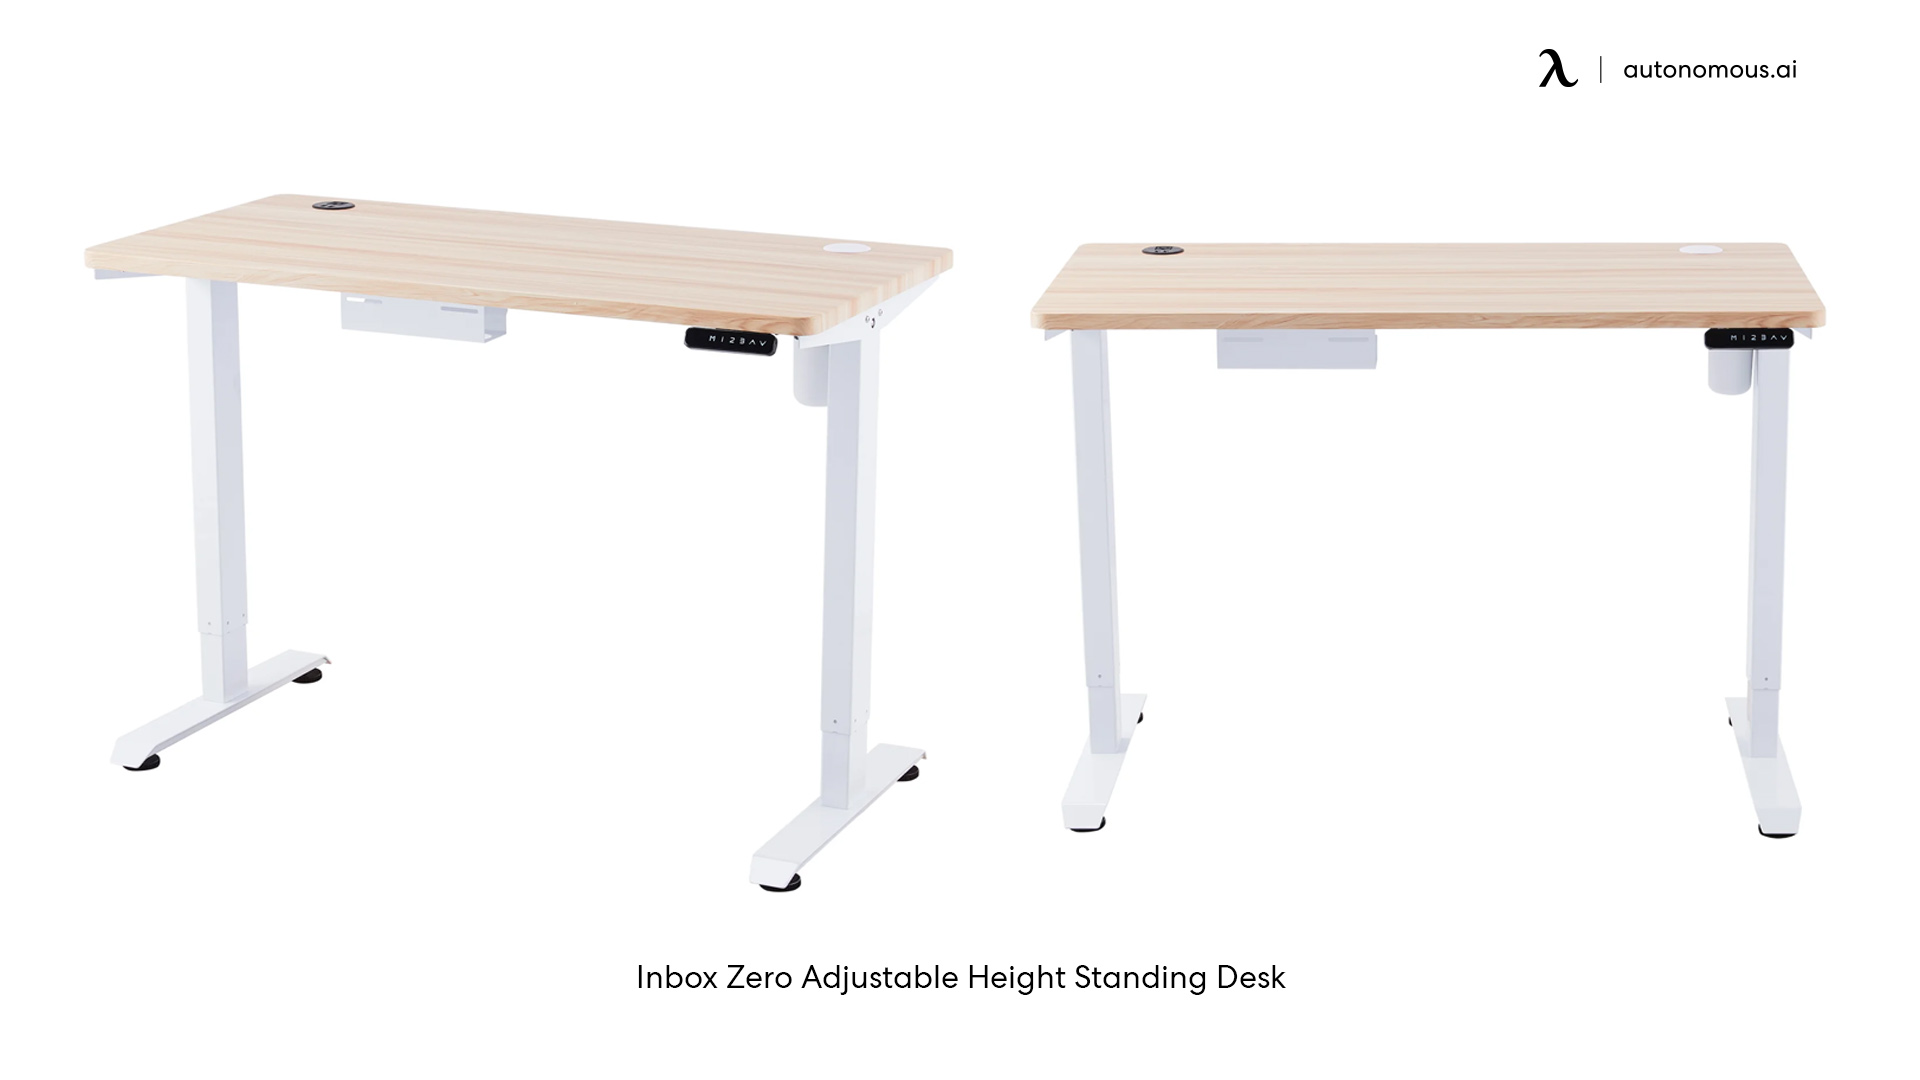 Inbox Zero Adjustable Height Standing Desk